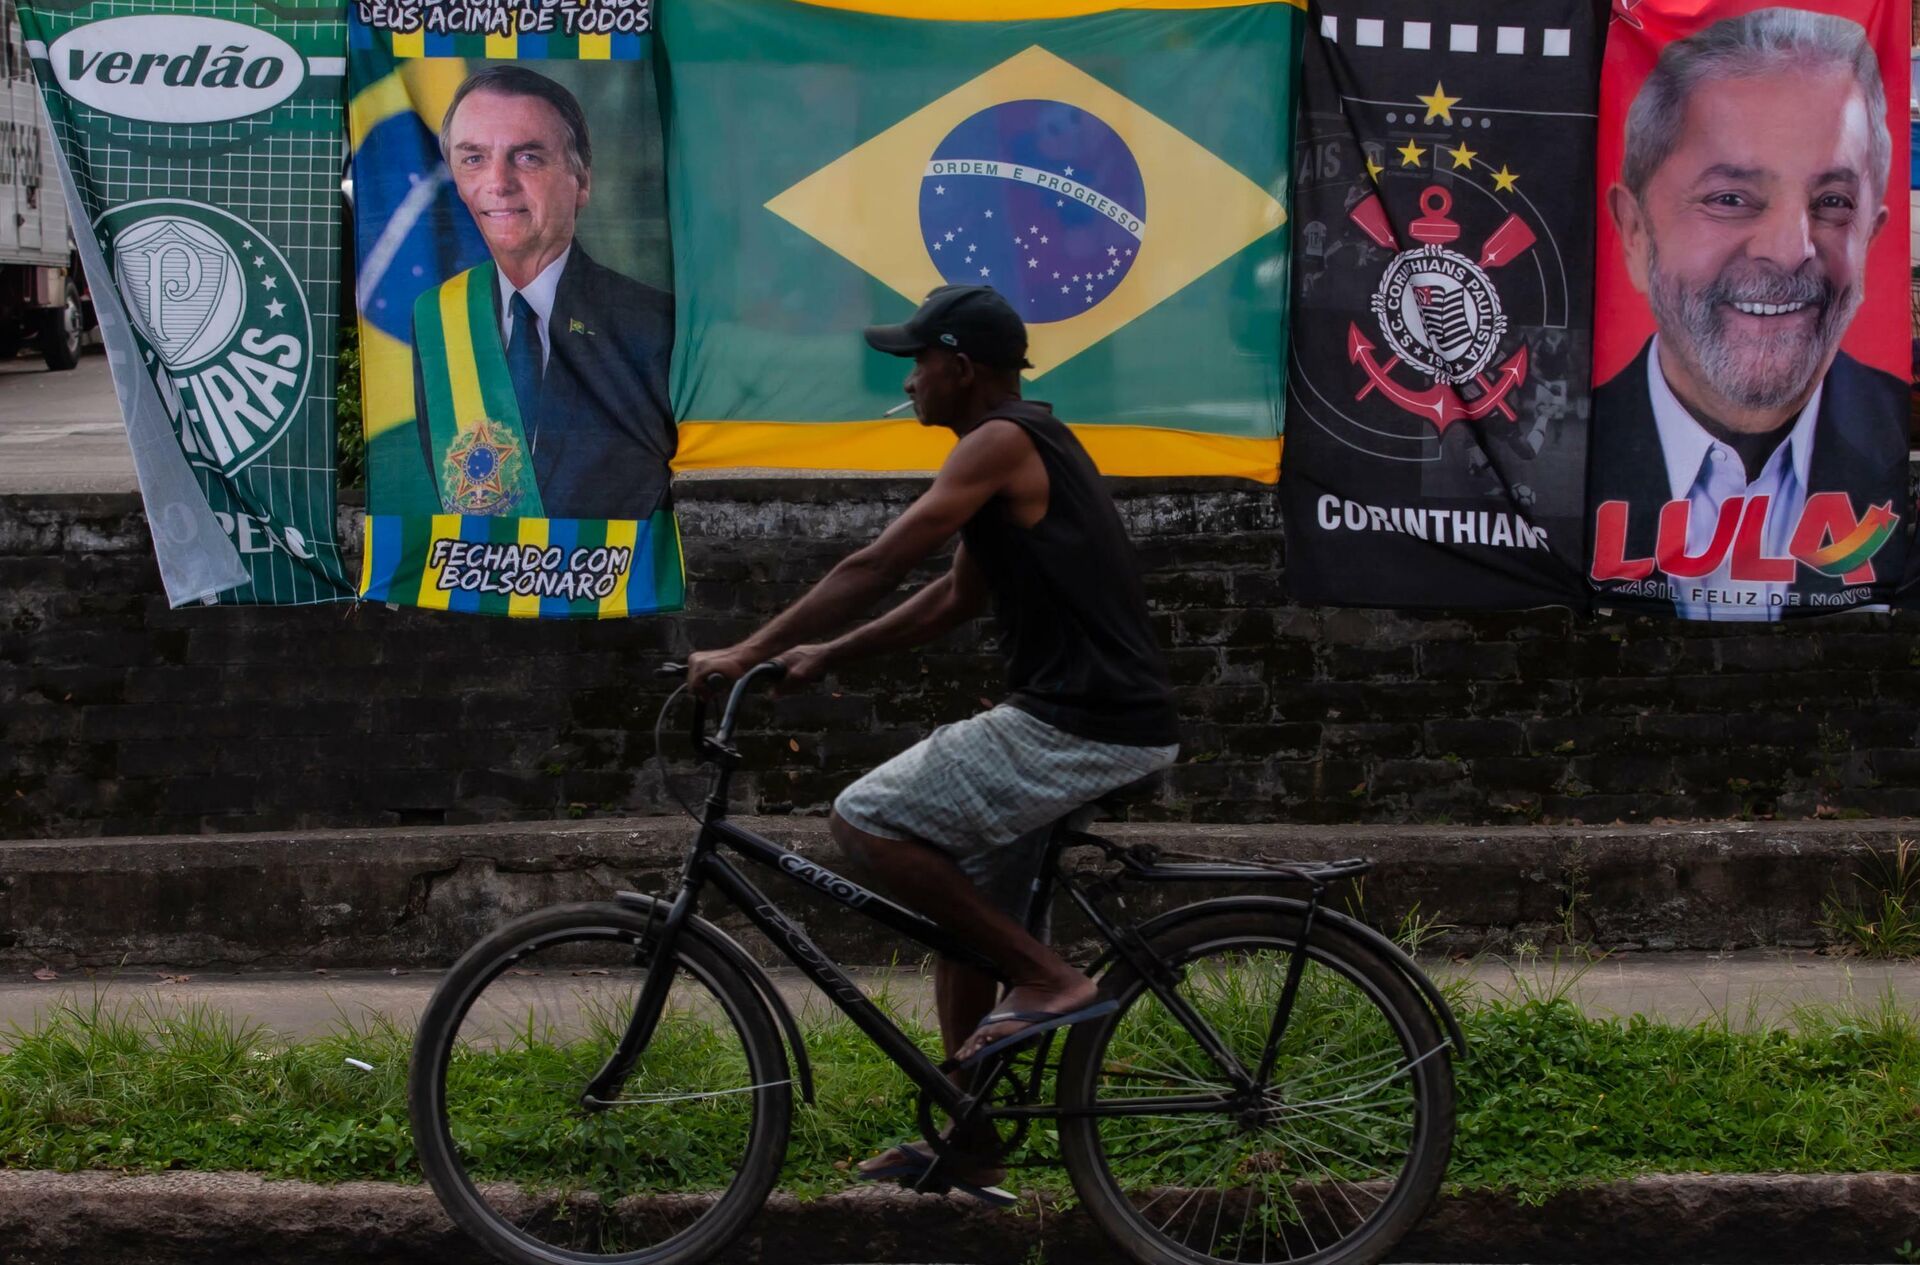 Ambulante vende bandeiras de Jair Bolsonaro e Lula no mesmo varal na cidade de Santos, em São Paulo, em 25 de janeiro de 2022 - Sputnik Brasil, 1920, 07.02.2022